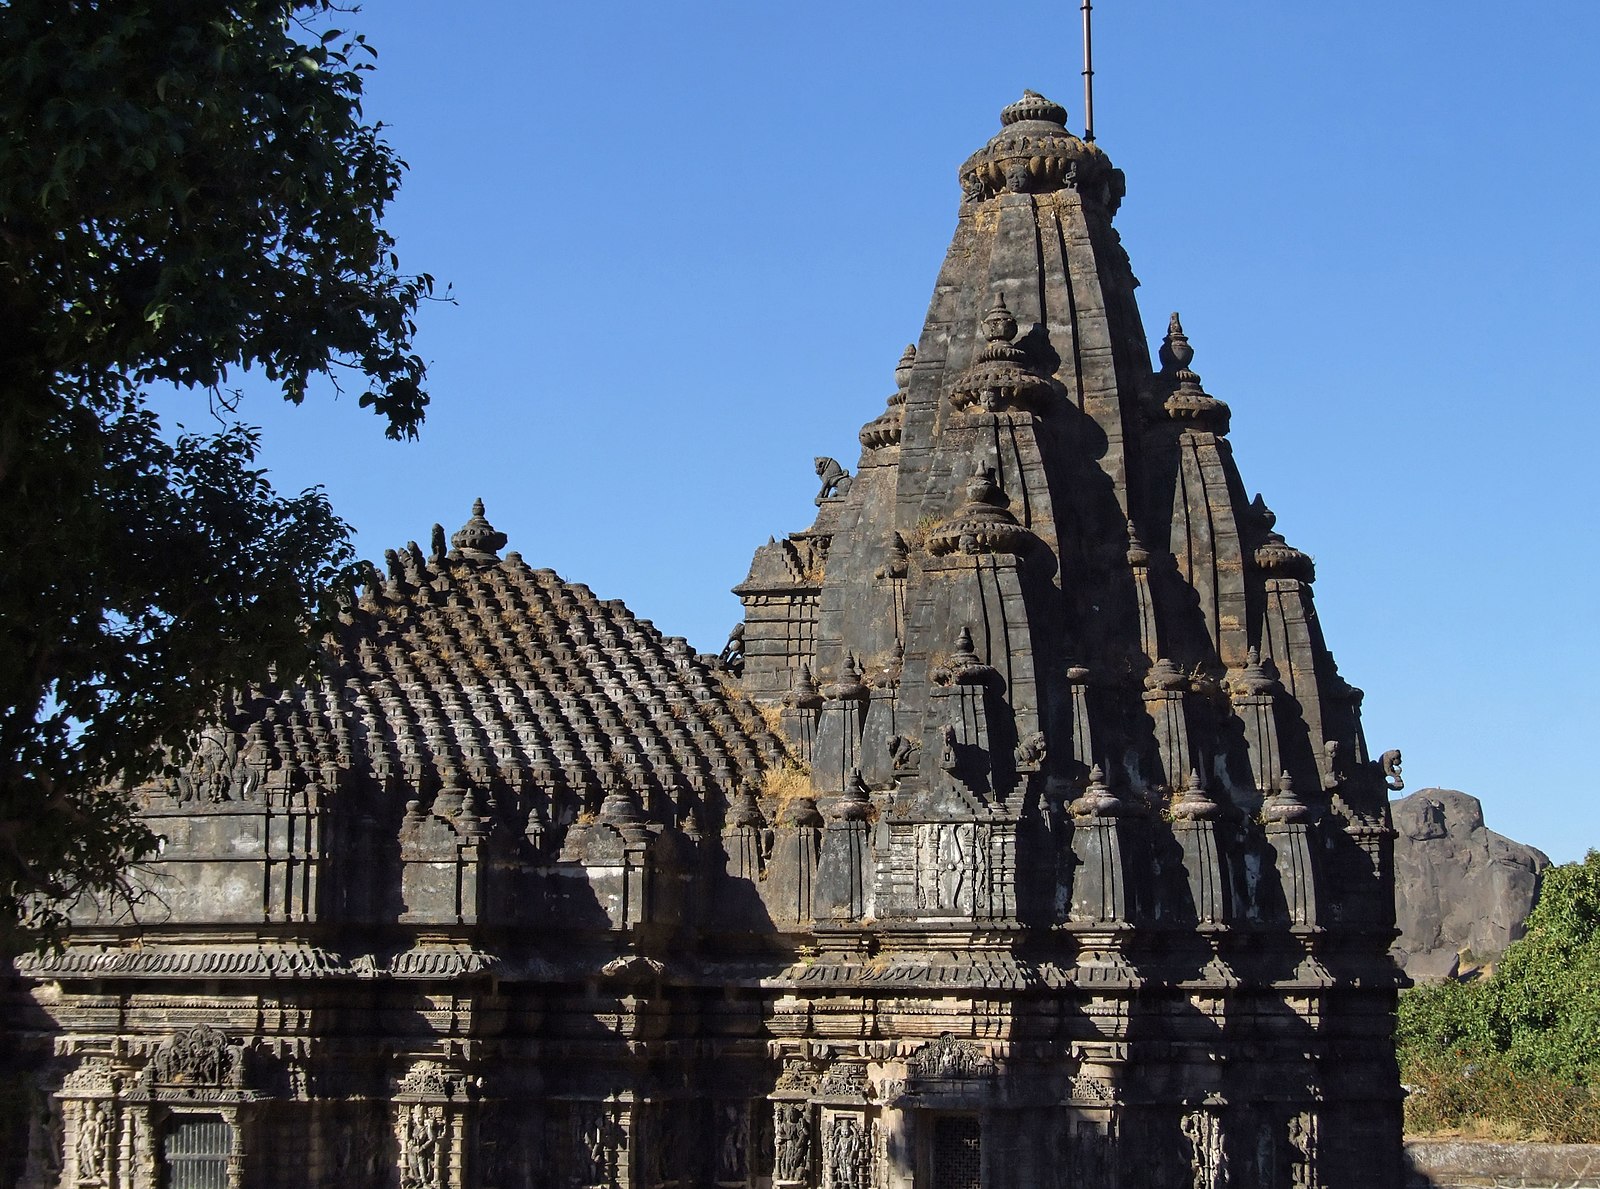 Girnar Jain temple - Neminath temple